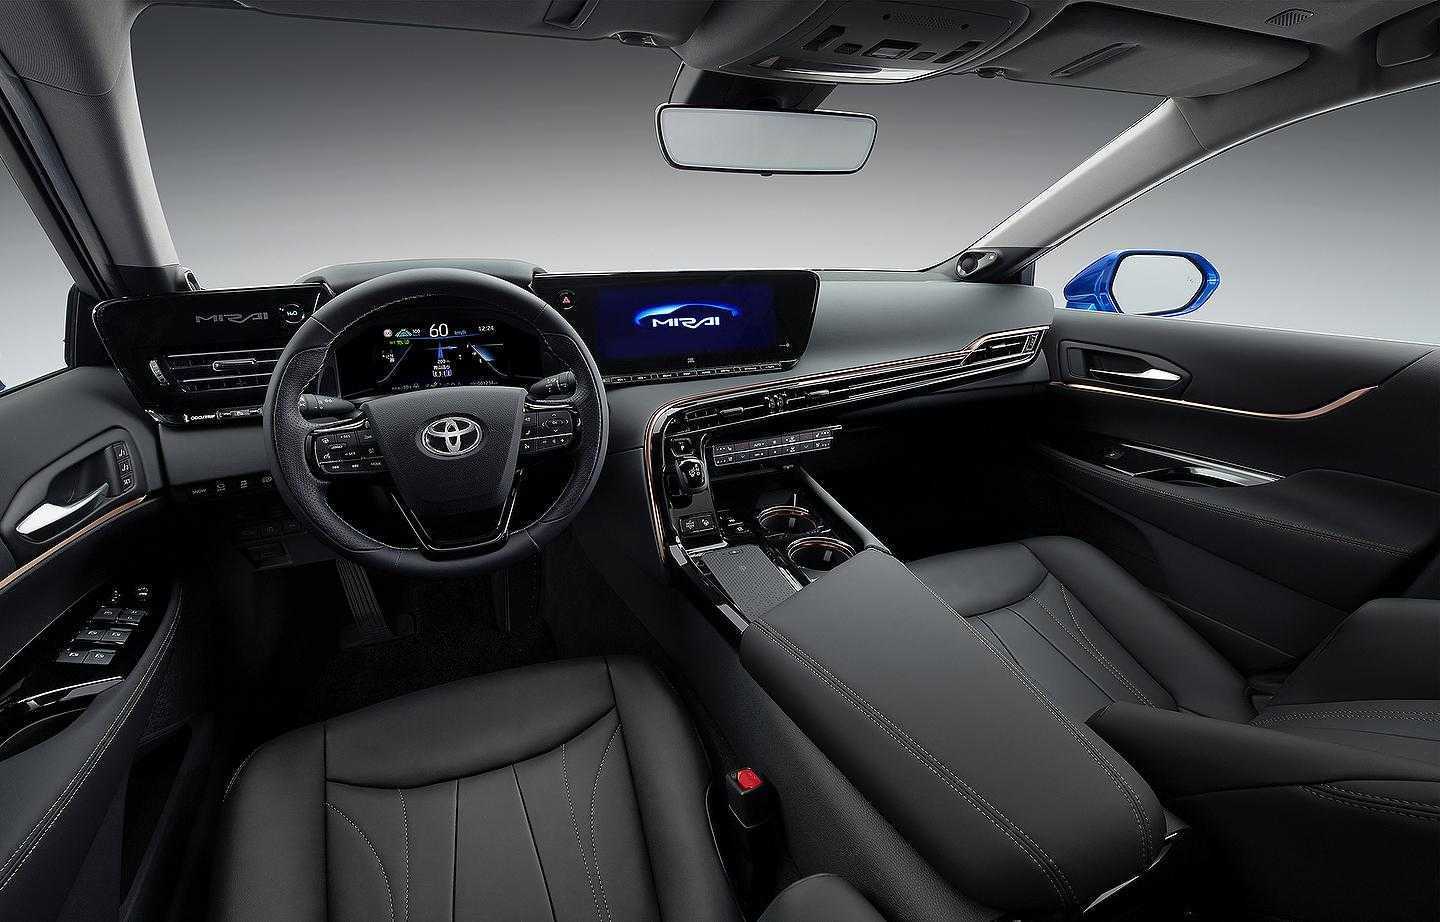 Toyota презентовала обновленную версию седана Mirai (toyota mirai 2)